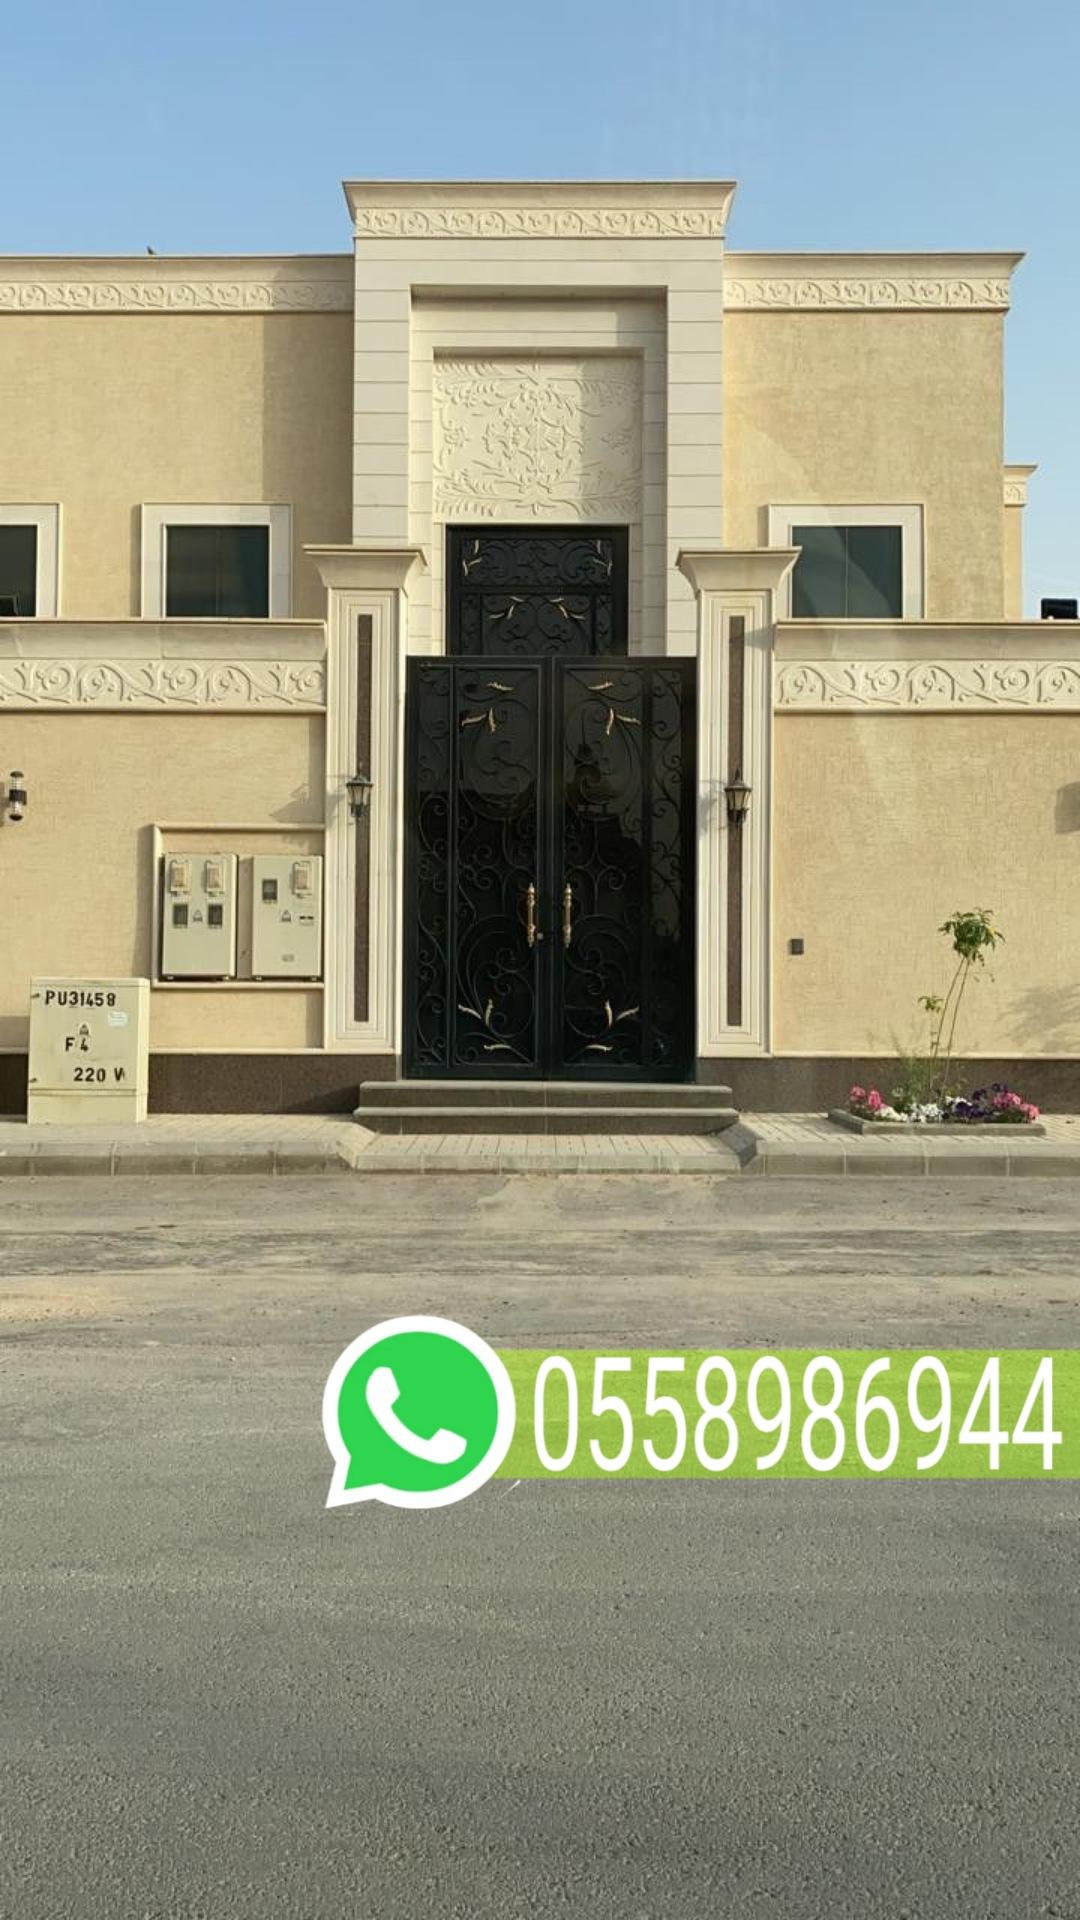 مقاول ترميم مباني في مكة المكرمة جوال 0558986944 776383263